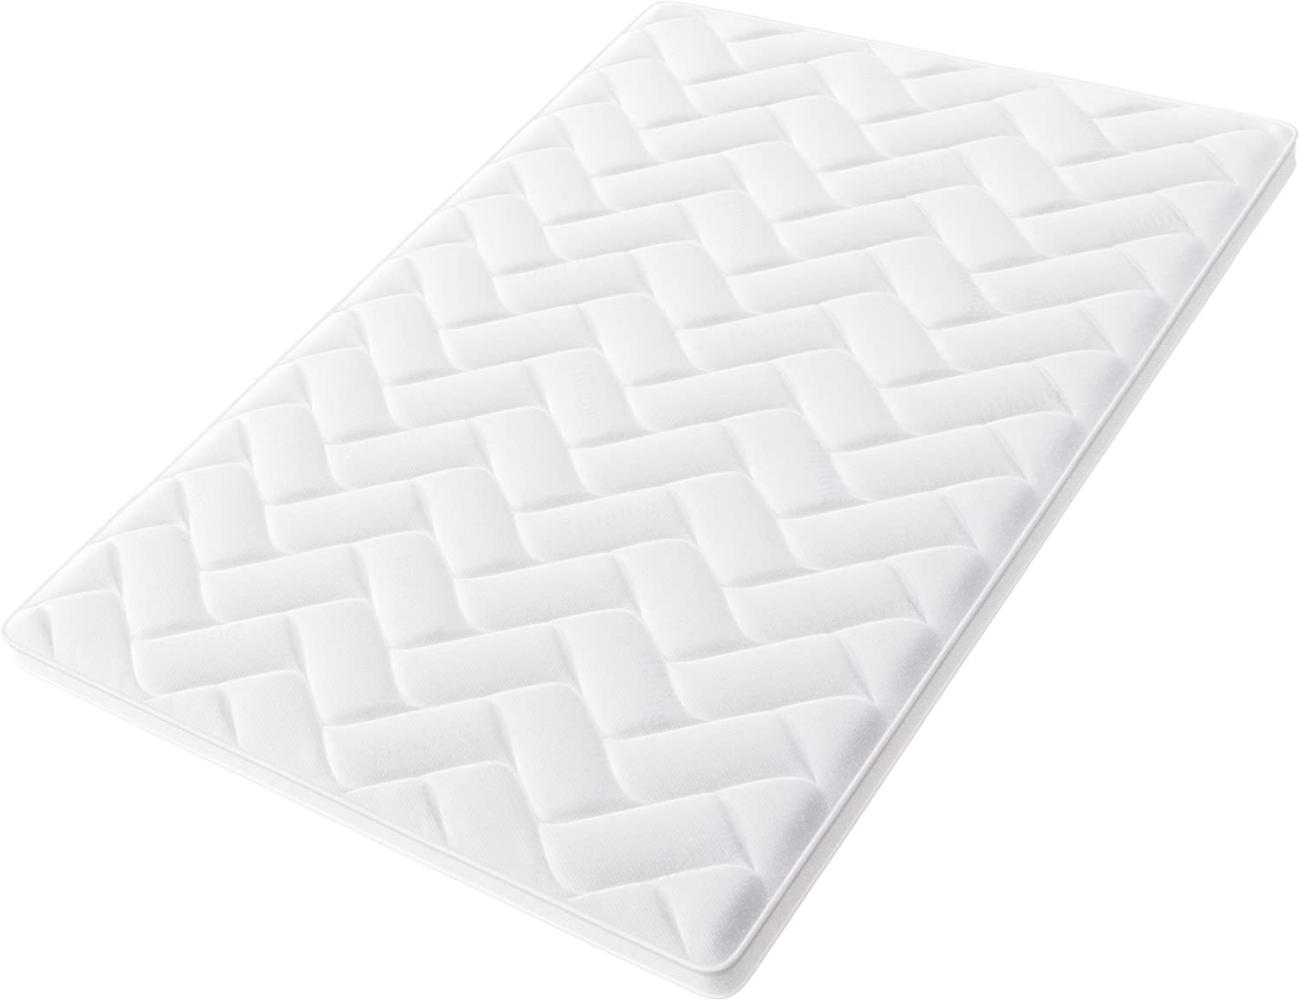 Hilding Sweden Pure 50 Matratzentopper, Mittelharte Matratzenauflage für besseren Schlafkomfort, Schaumstoff, Weiß, 200 x 80 cm Bild 1